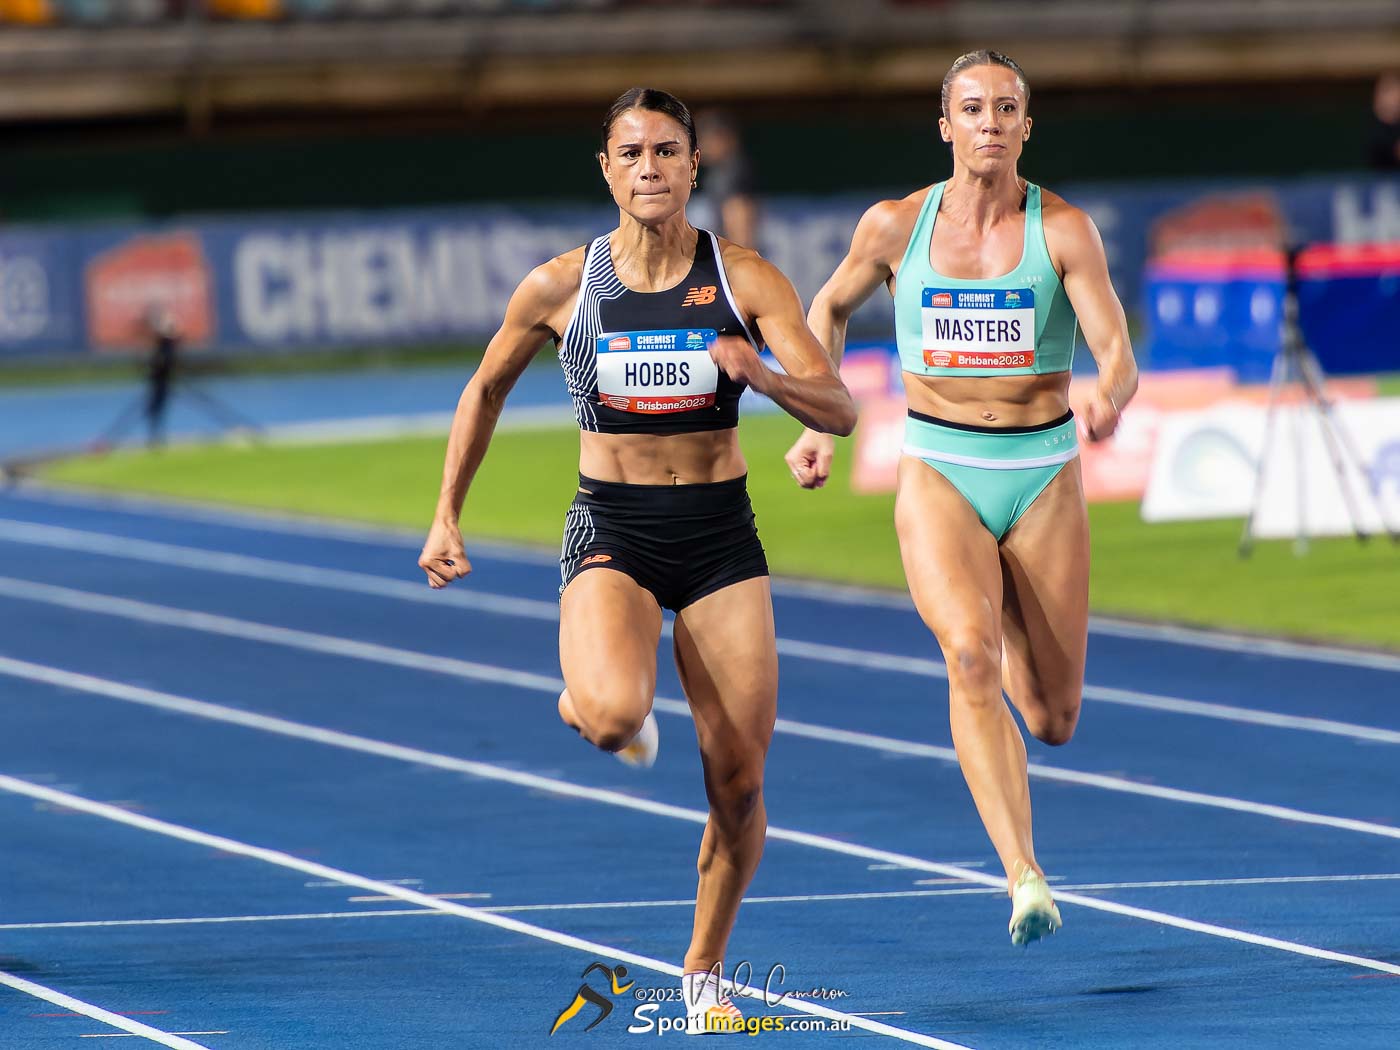 Zoe Hobbs, Bree Masters, Women's 100m A Race